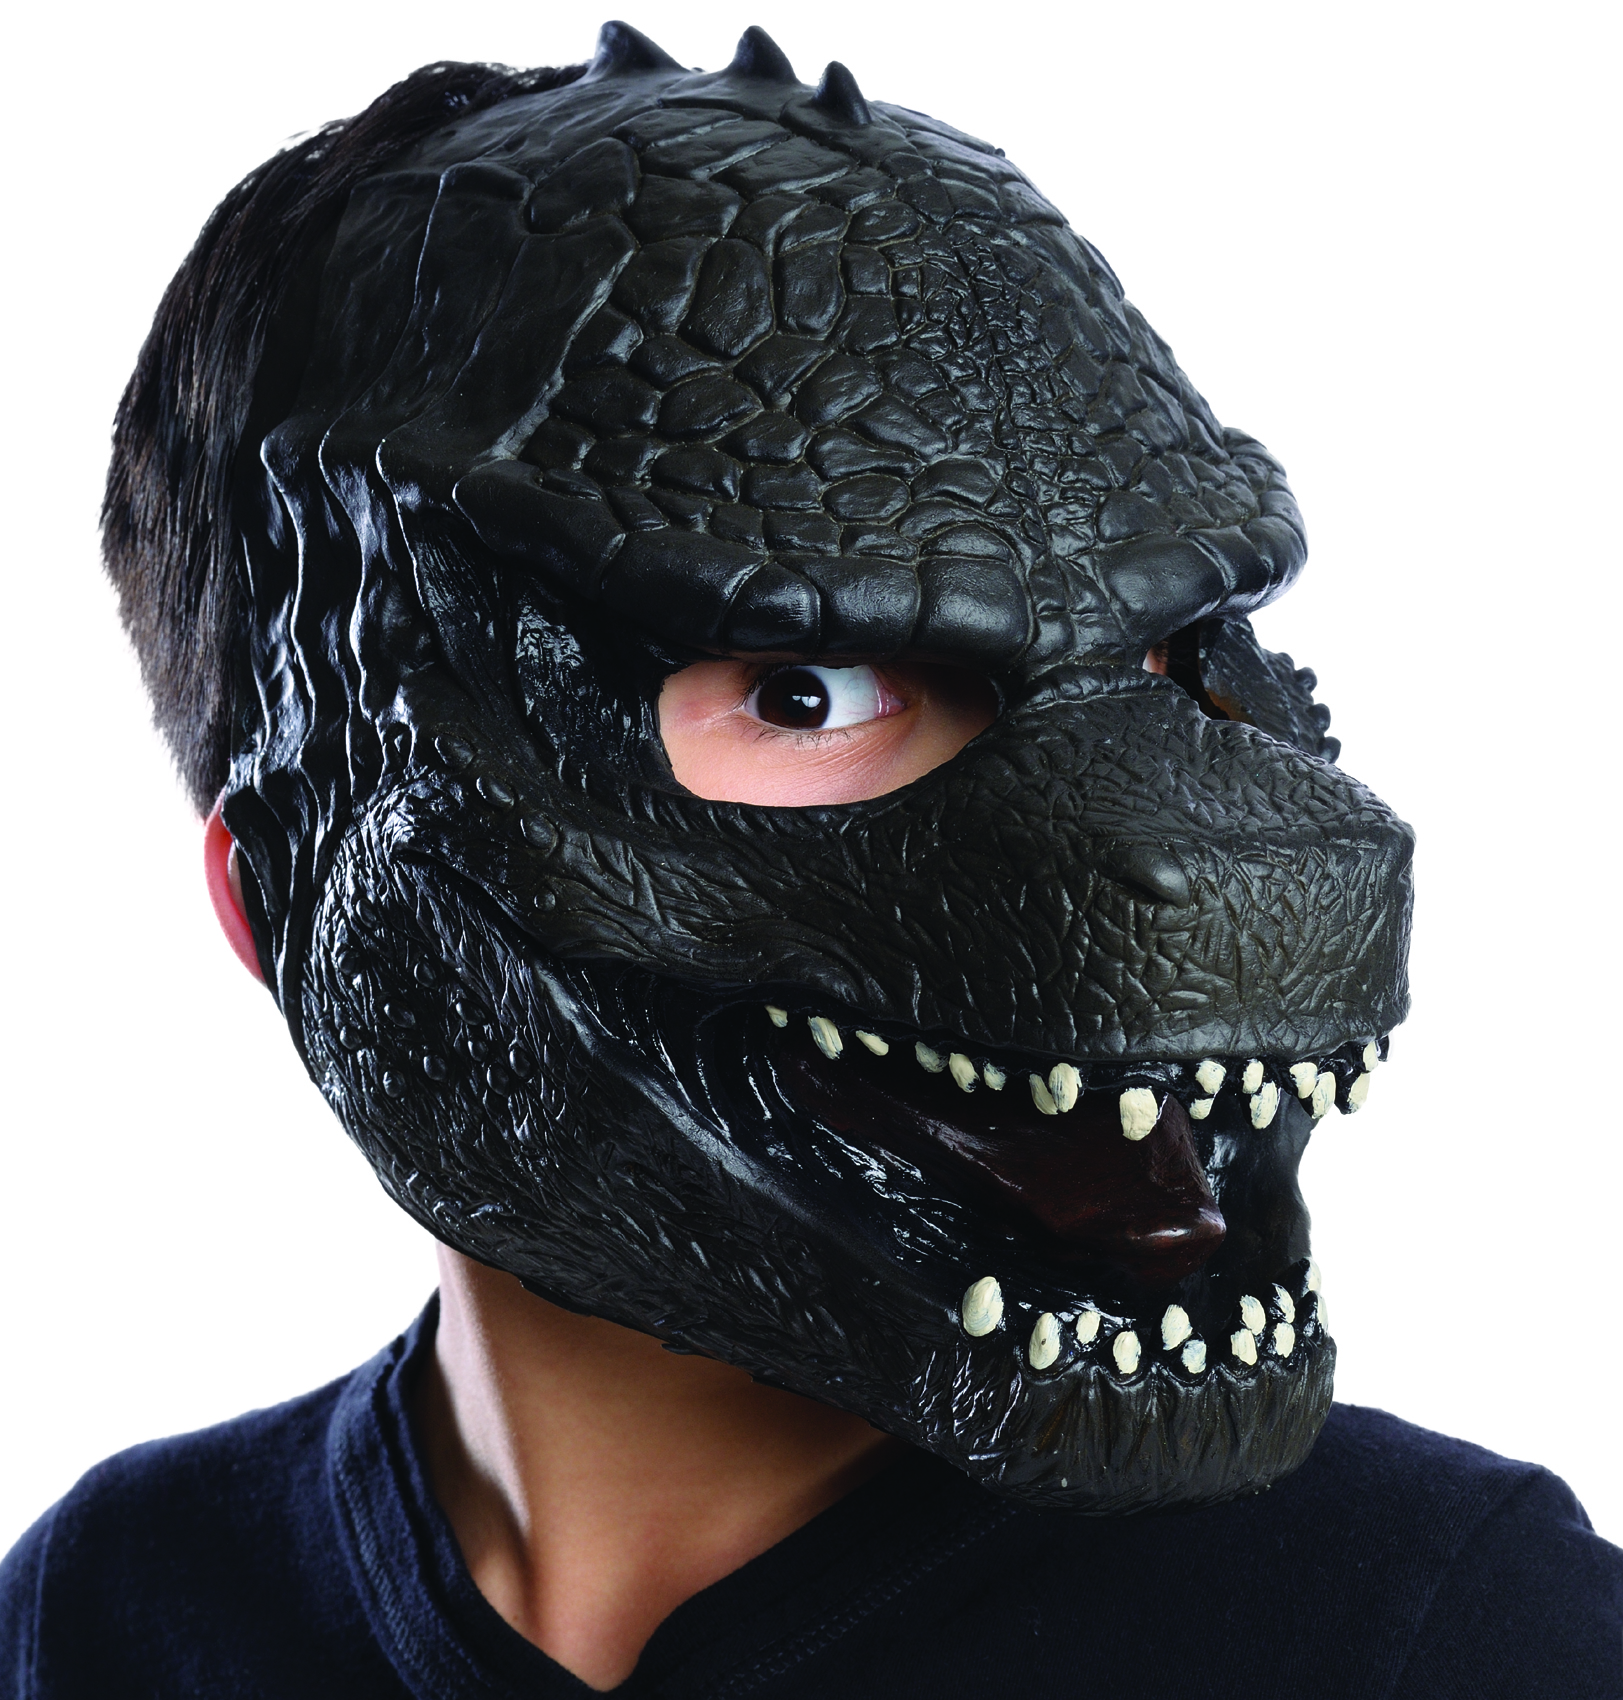 Godzilla Child Mask - Click Image to Close